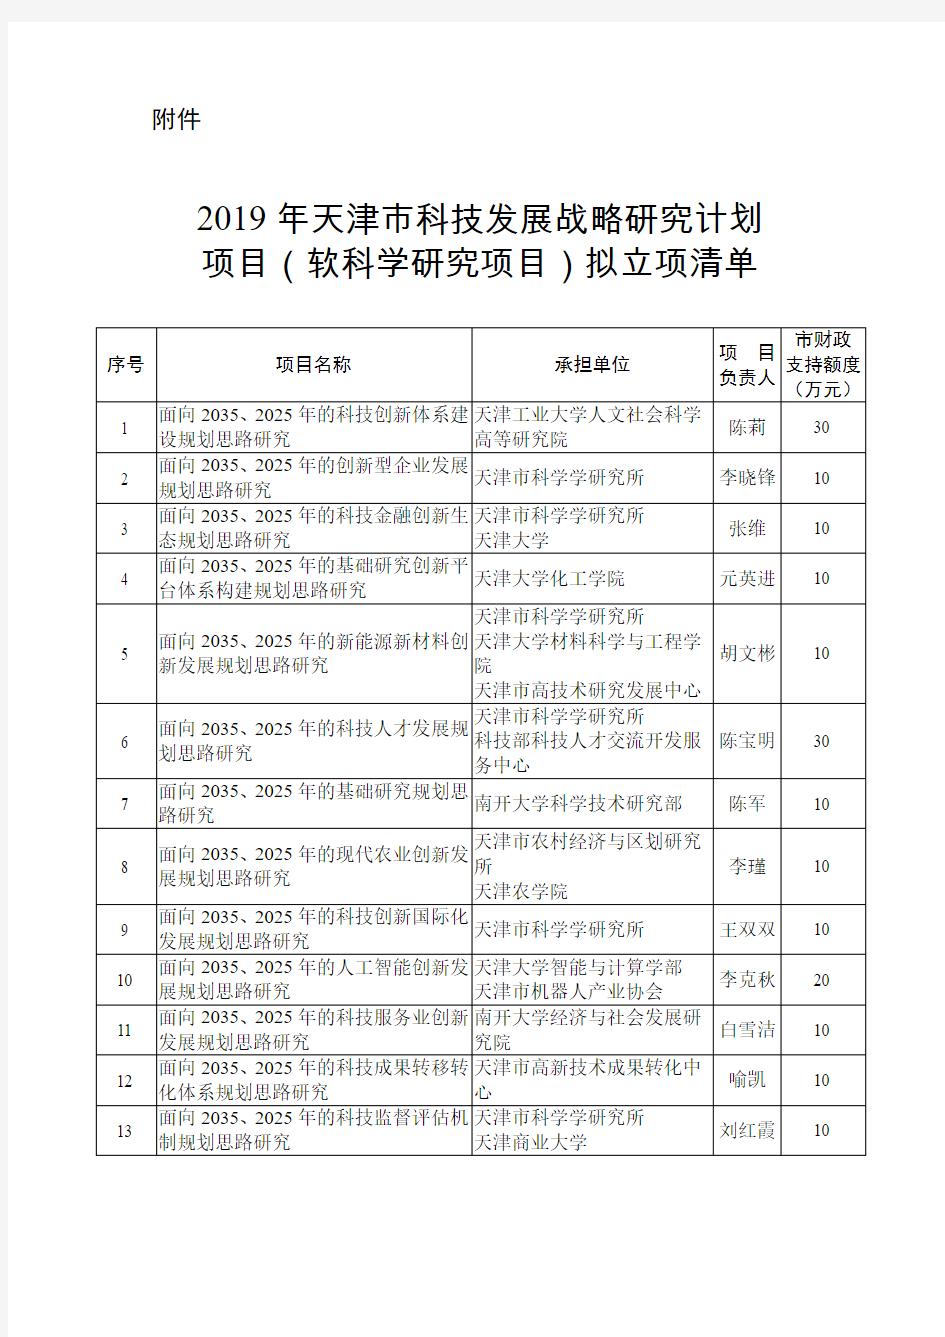 2019年天津市科技发展战略研究计划项目(软科学研究项目)拟立项清单12.2